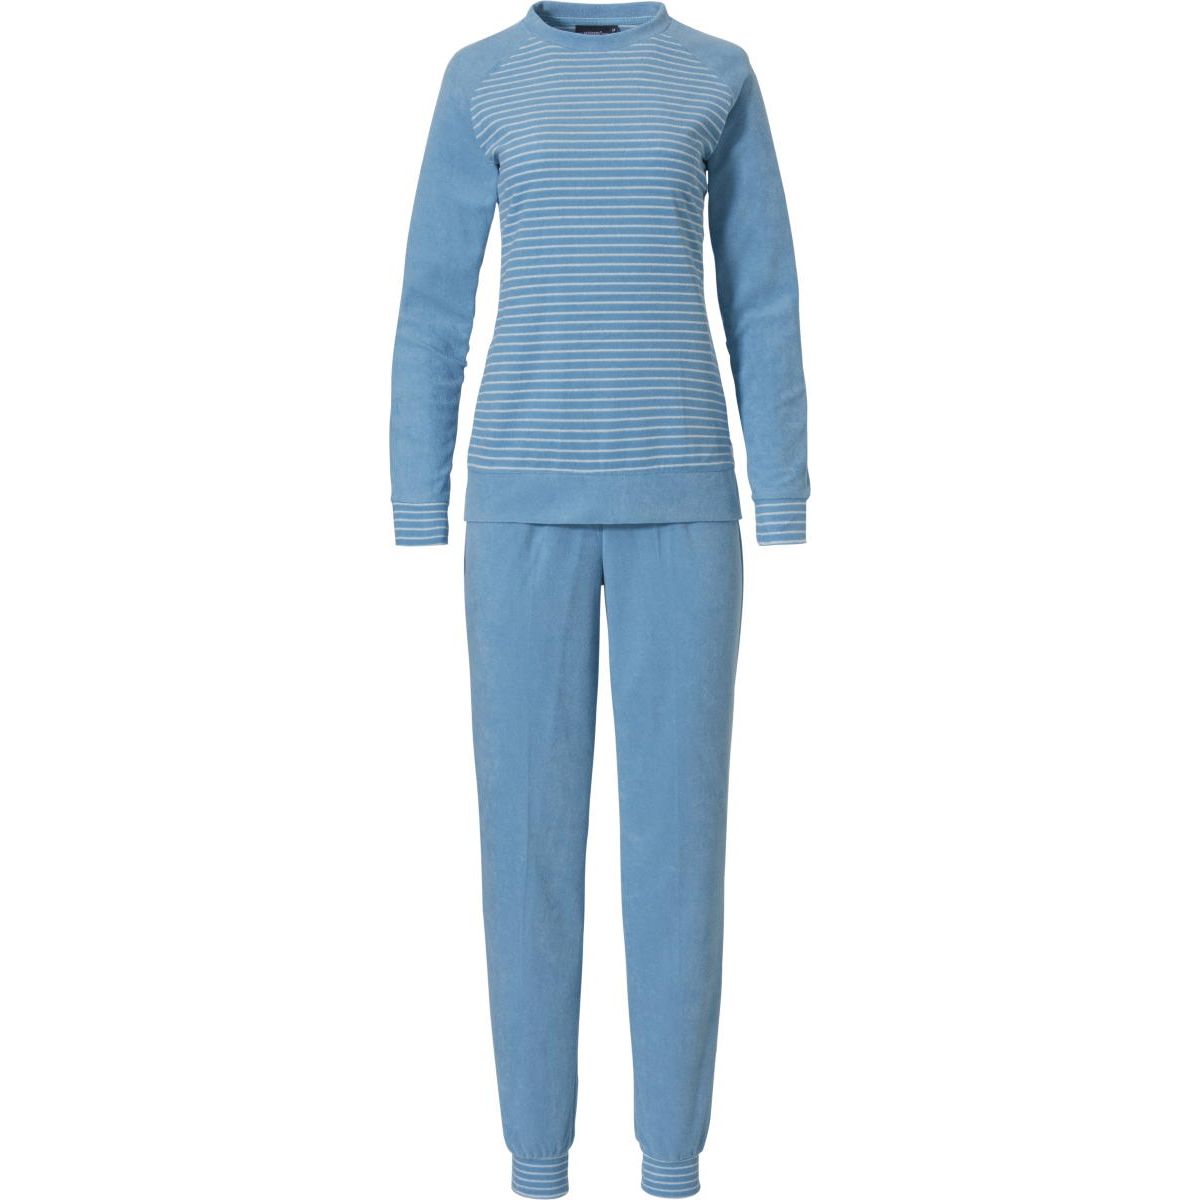 oorsprong Vul in Alstublieft Blauwe badstof pyjama Pastunette | Gratis verzending vanaf € 40,- en gratis  retour | Online de mooiste pyjama's, nachthemden, ondermode en meer